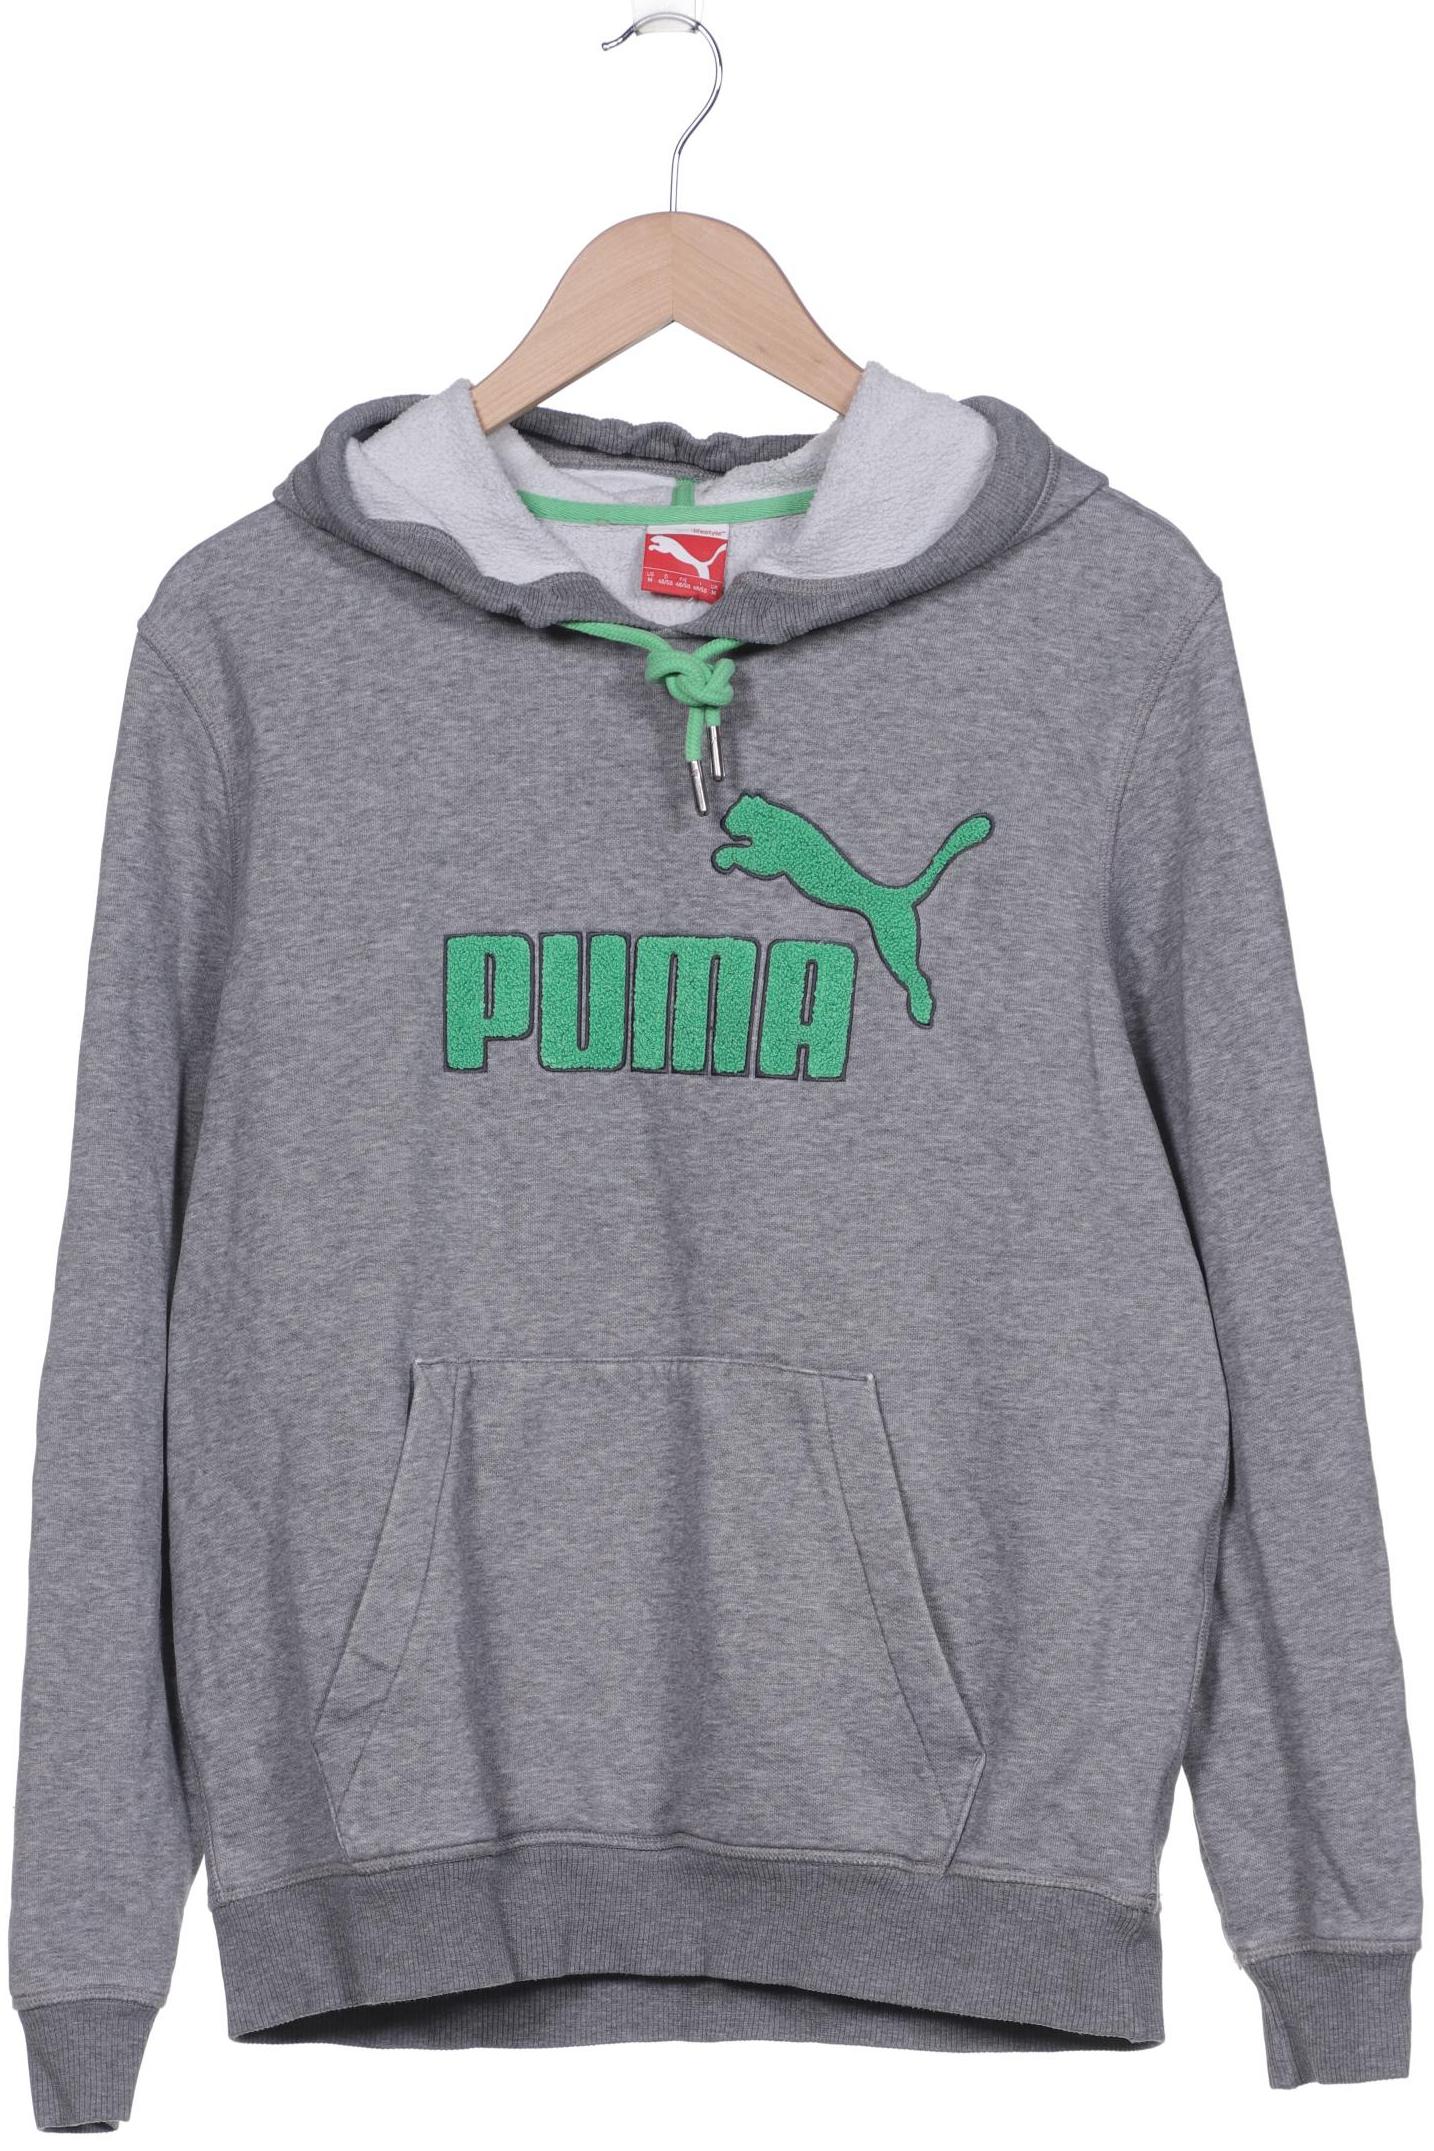 Puma Herren Sweatshirt, grau, Gr. 48 von Puma